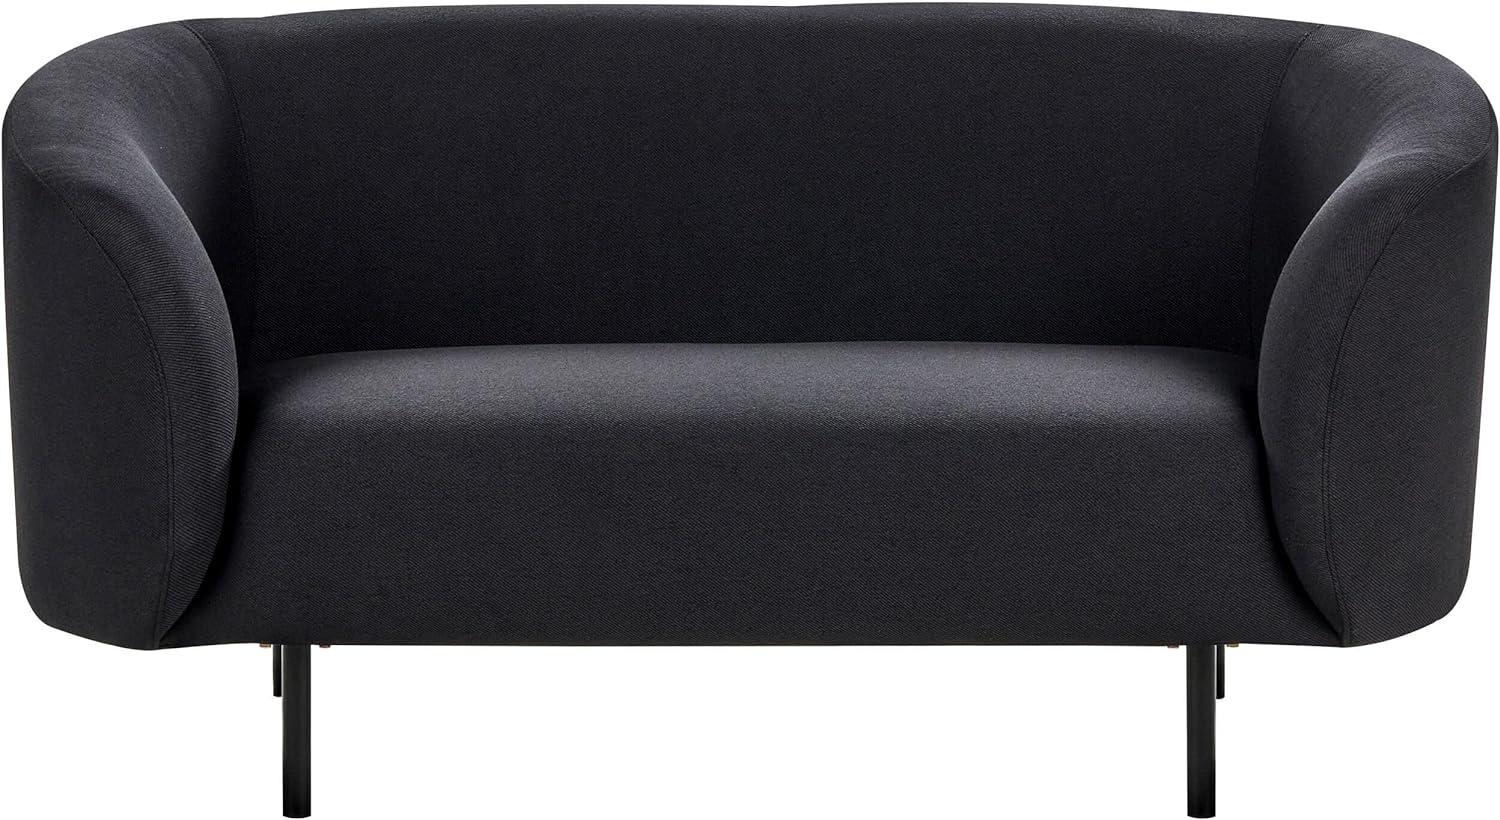 2-Sitzer Sofa Stoff schwarz LOEN Bild 1